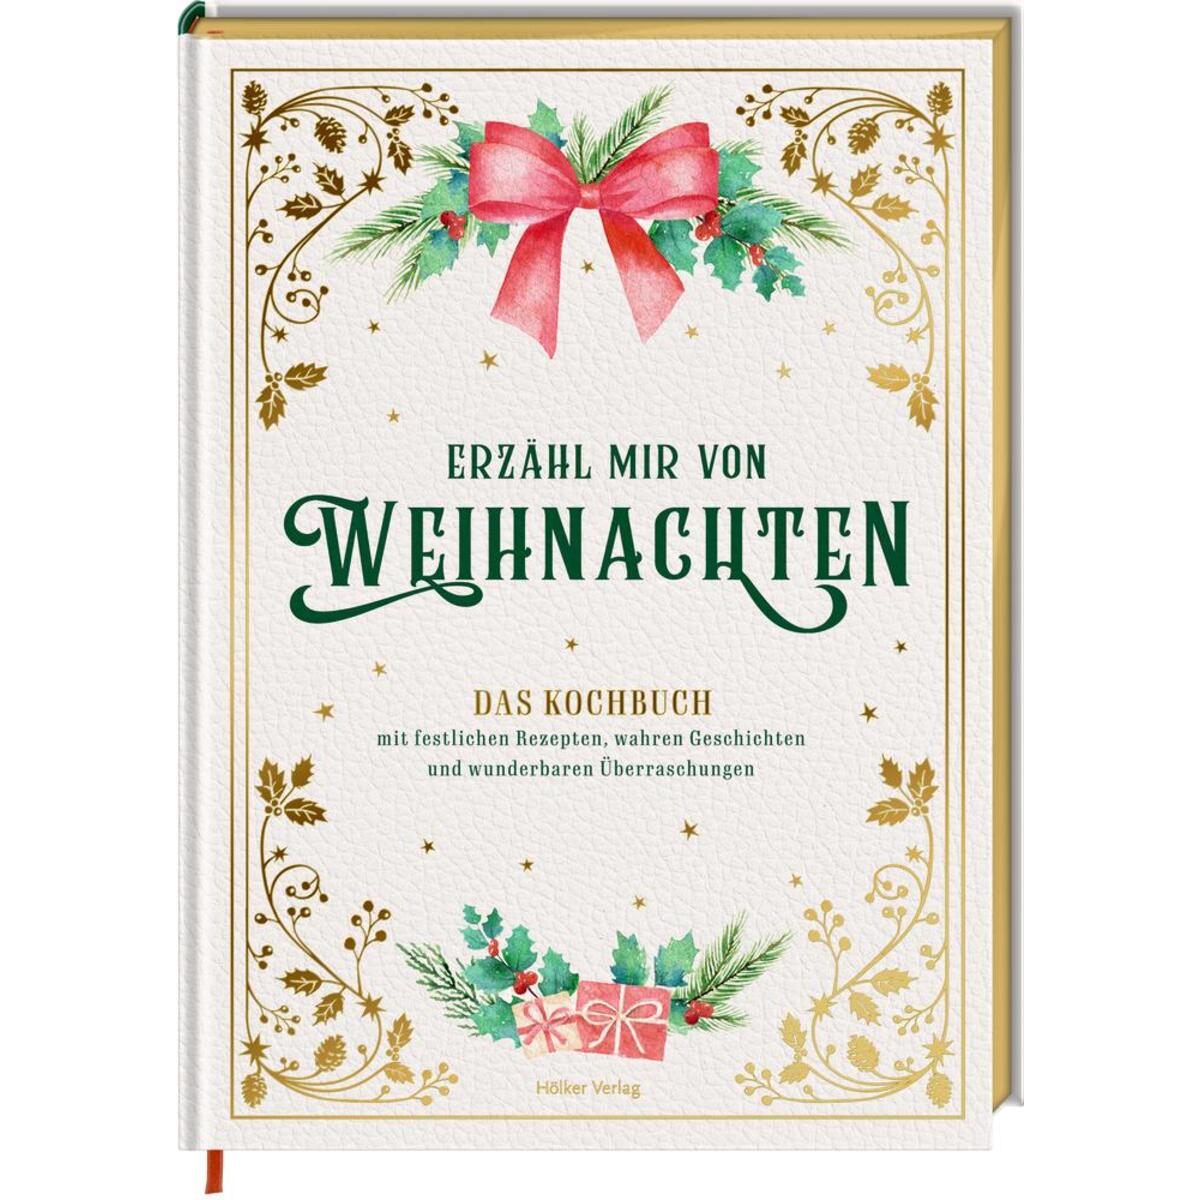 Erzähl mir von Weihnachten - Das Kochbuch mit festlichen Rezepten, wahren Geschi... von Hoelker Verlag